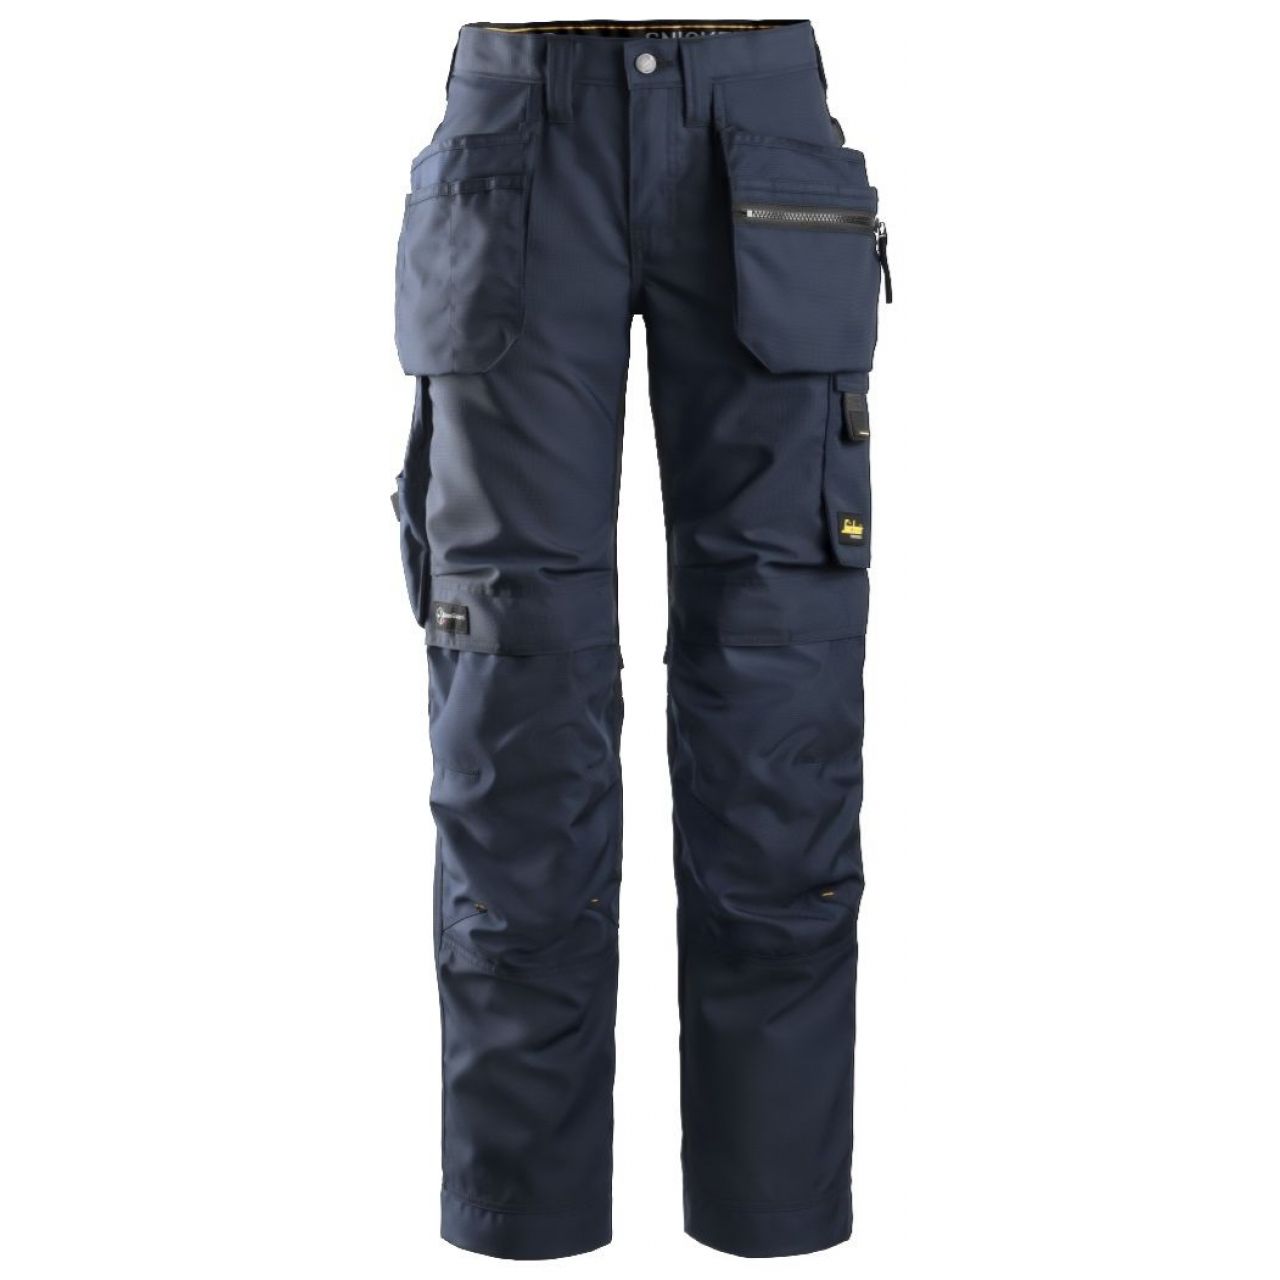 Pantalon de mujer AllroundWork+ con bolsillos flotantes azul marino-negro talla 019